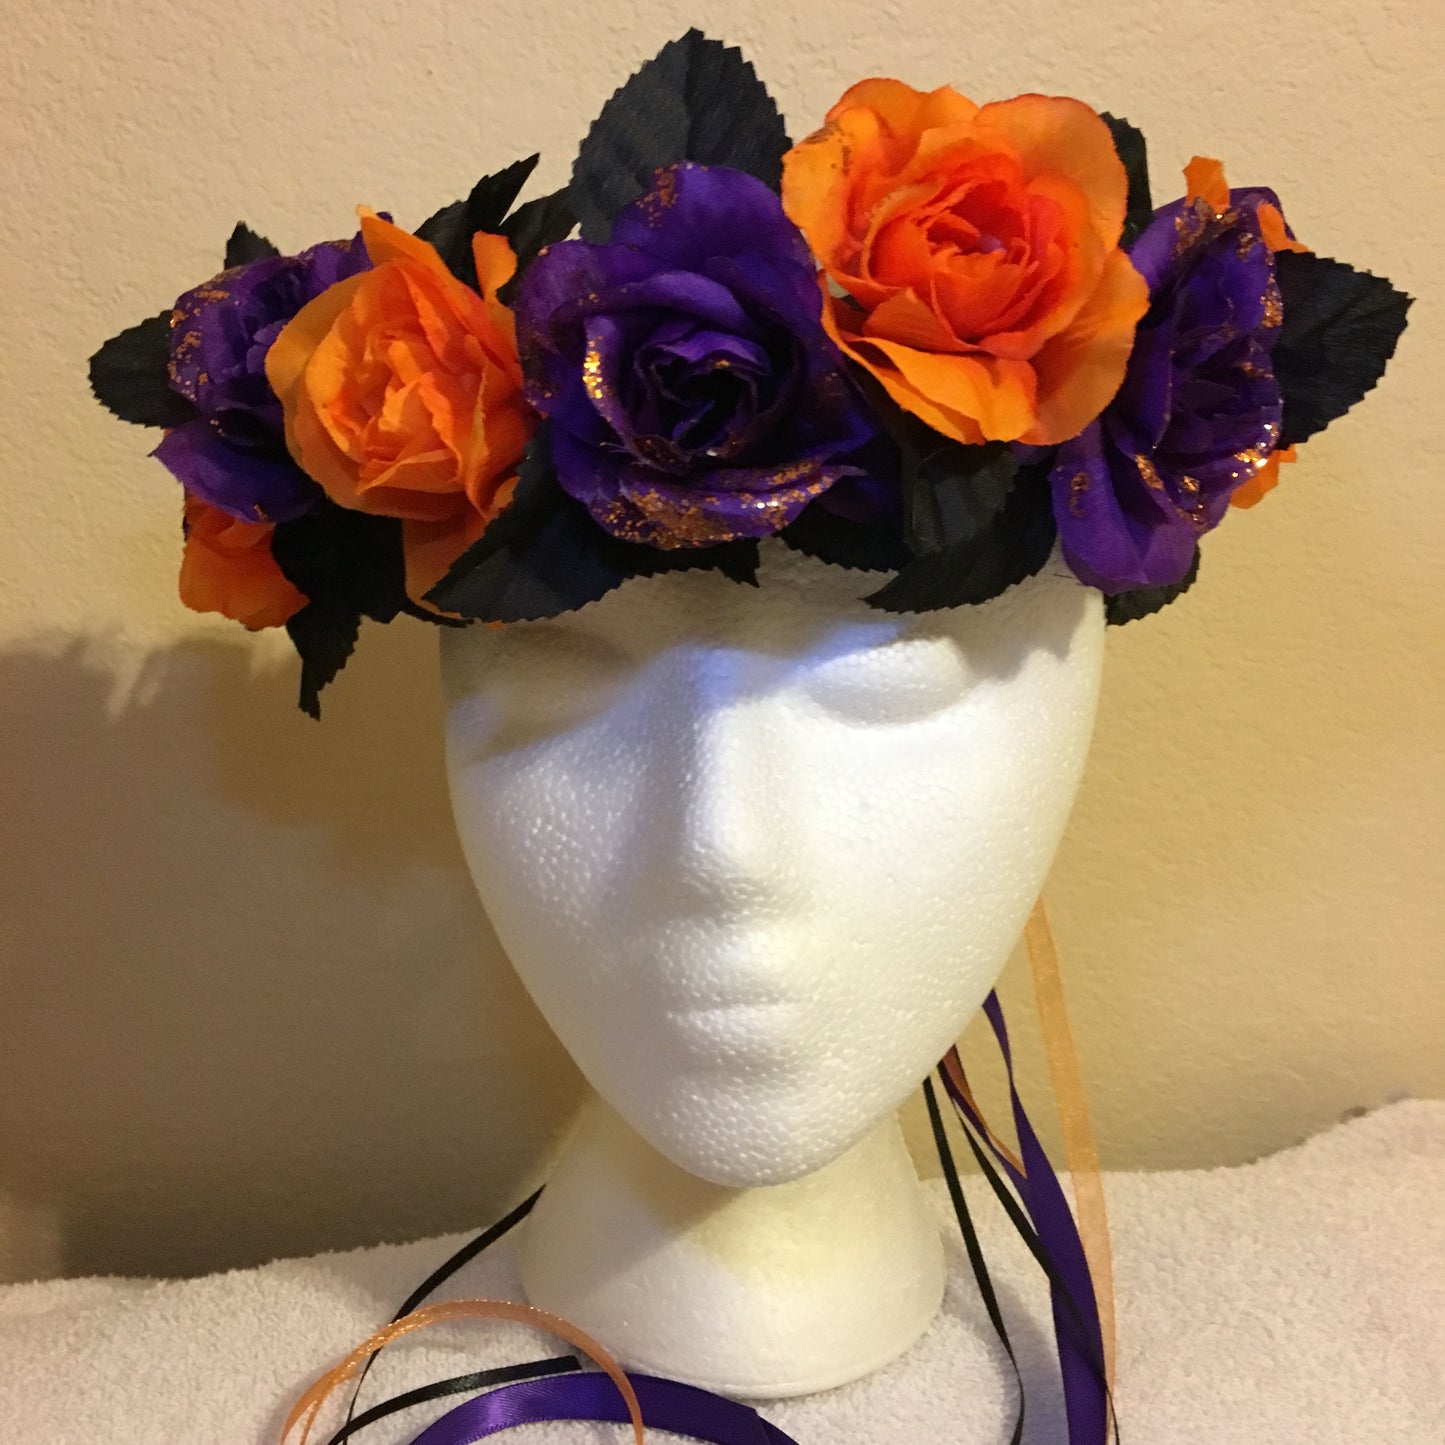 Medium Wreath - Black, purple, & orange flowers